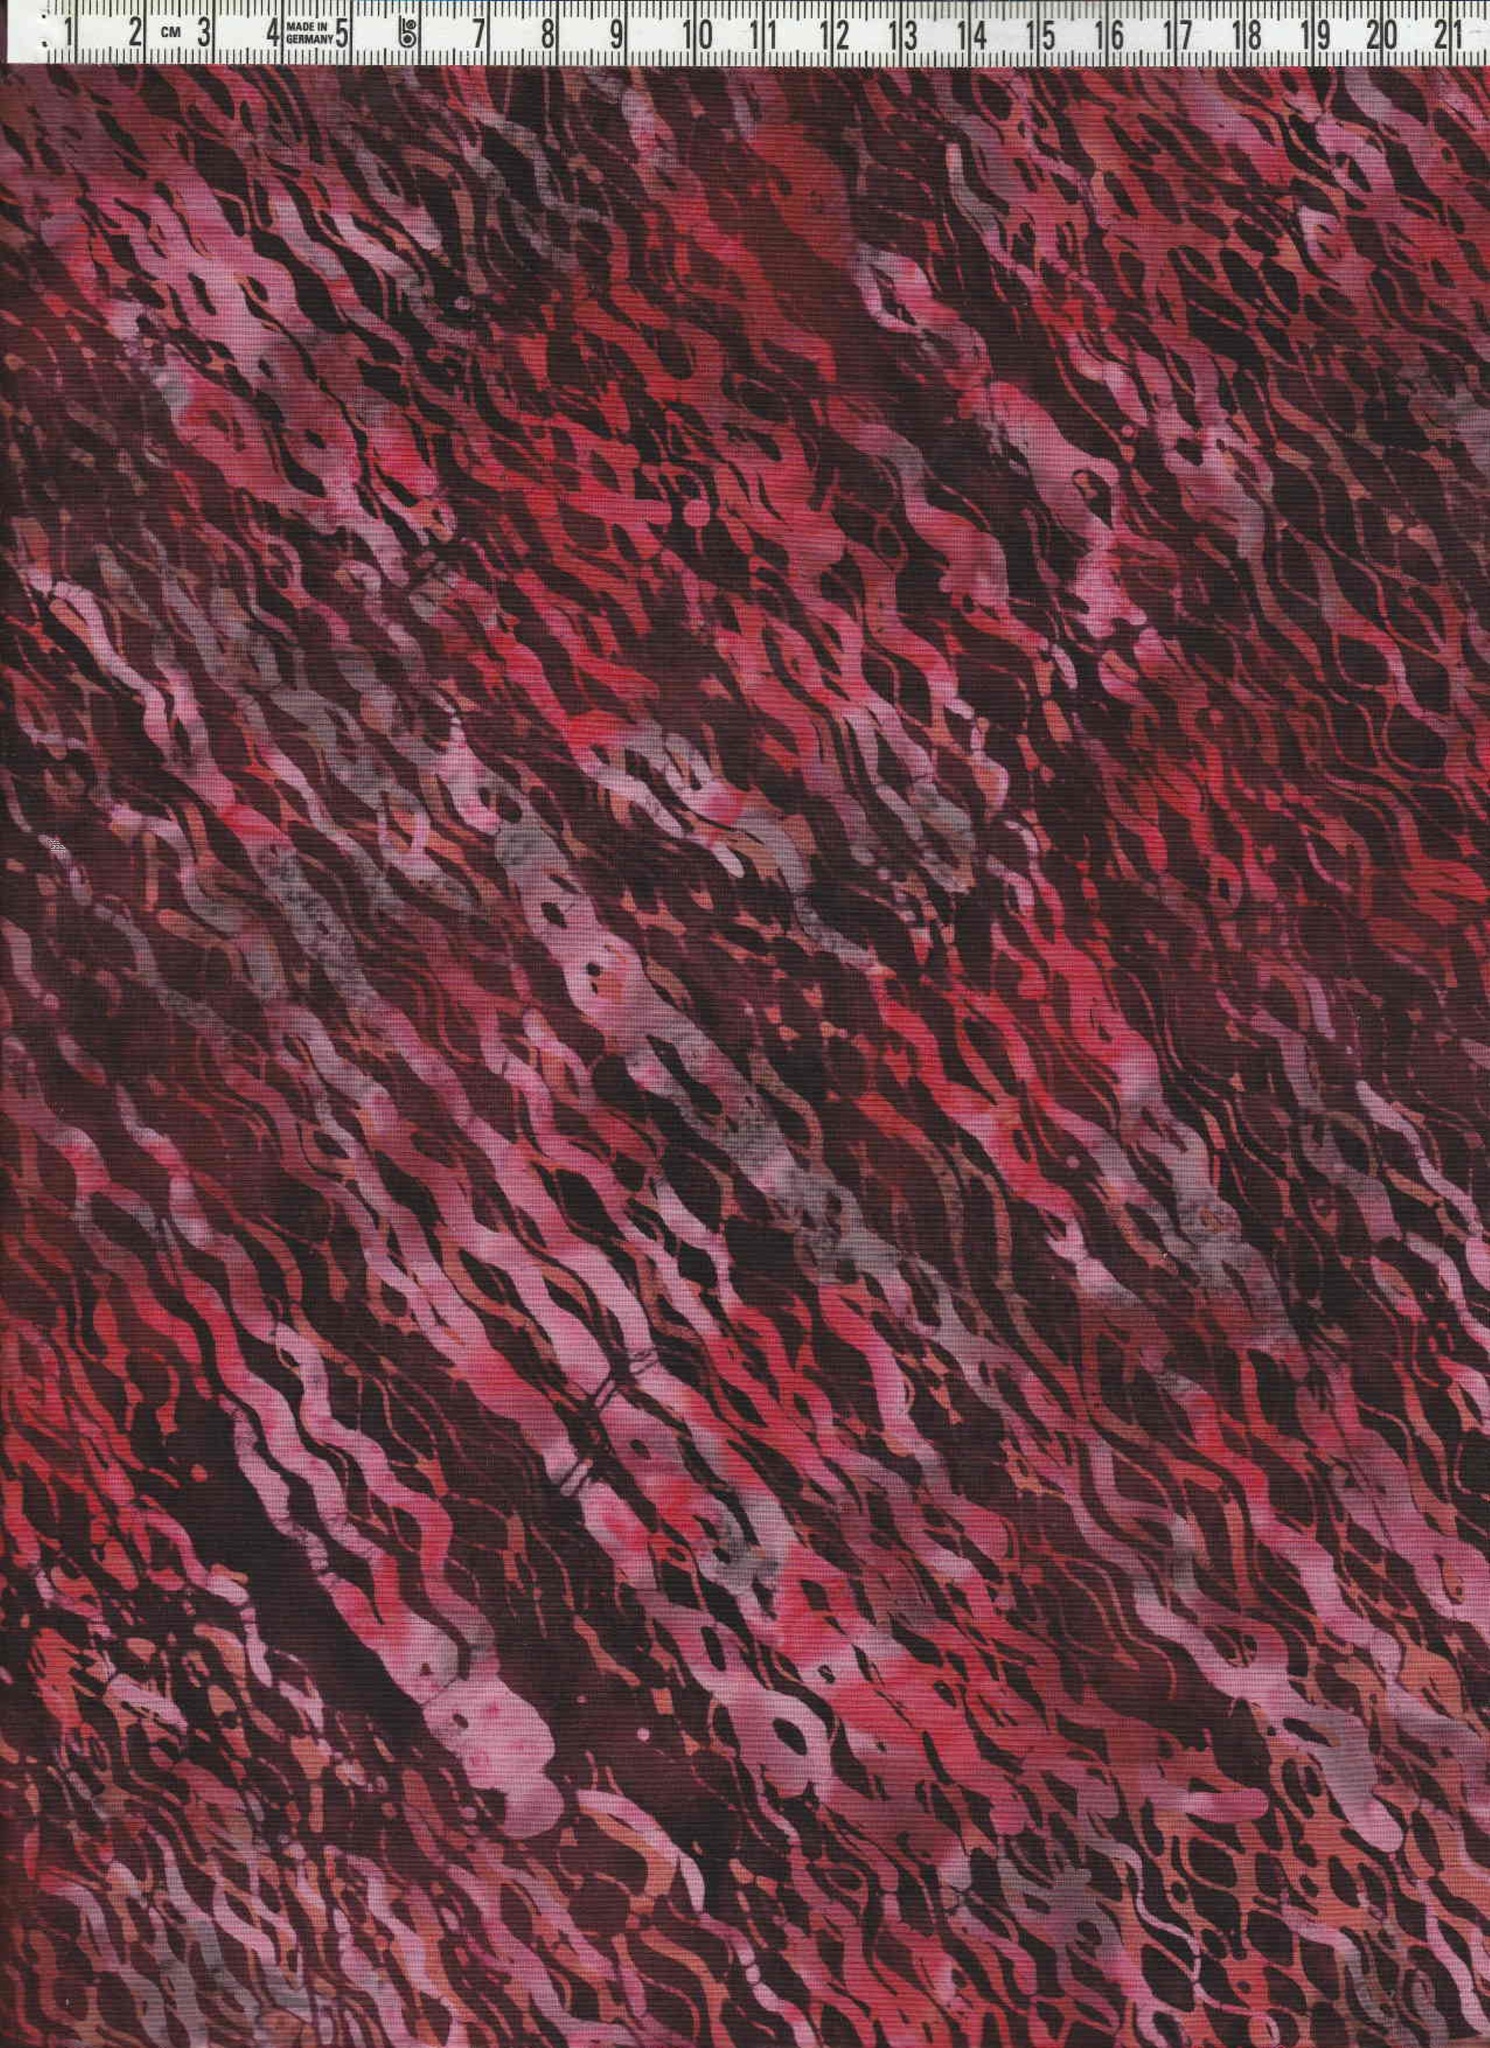 Diagonalmönstrat med mäktiga röda, rosa och svarta färger